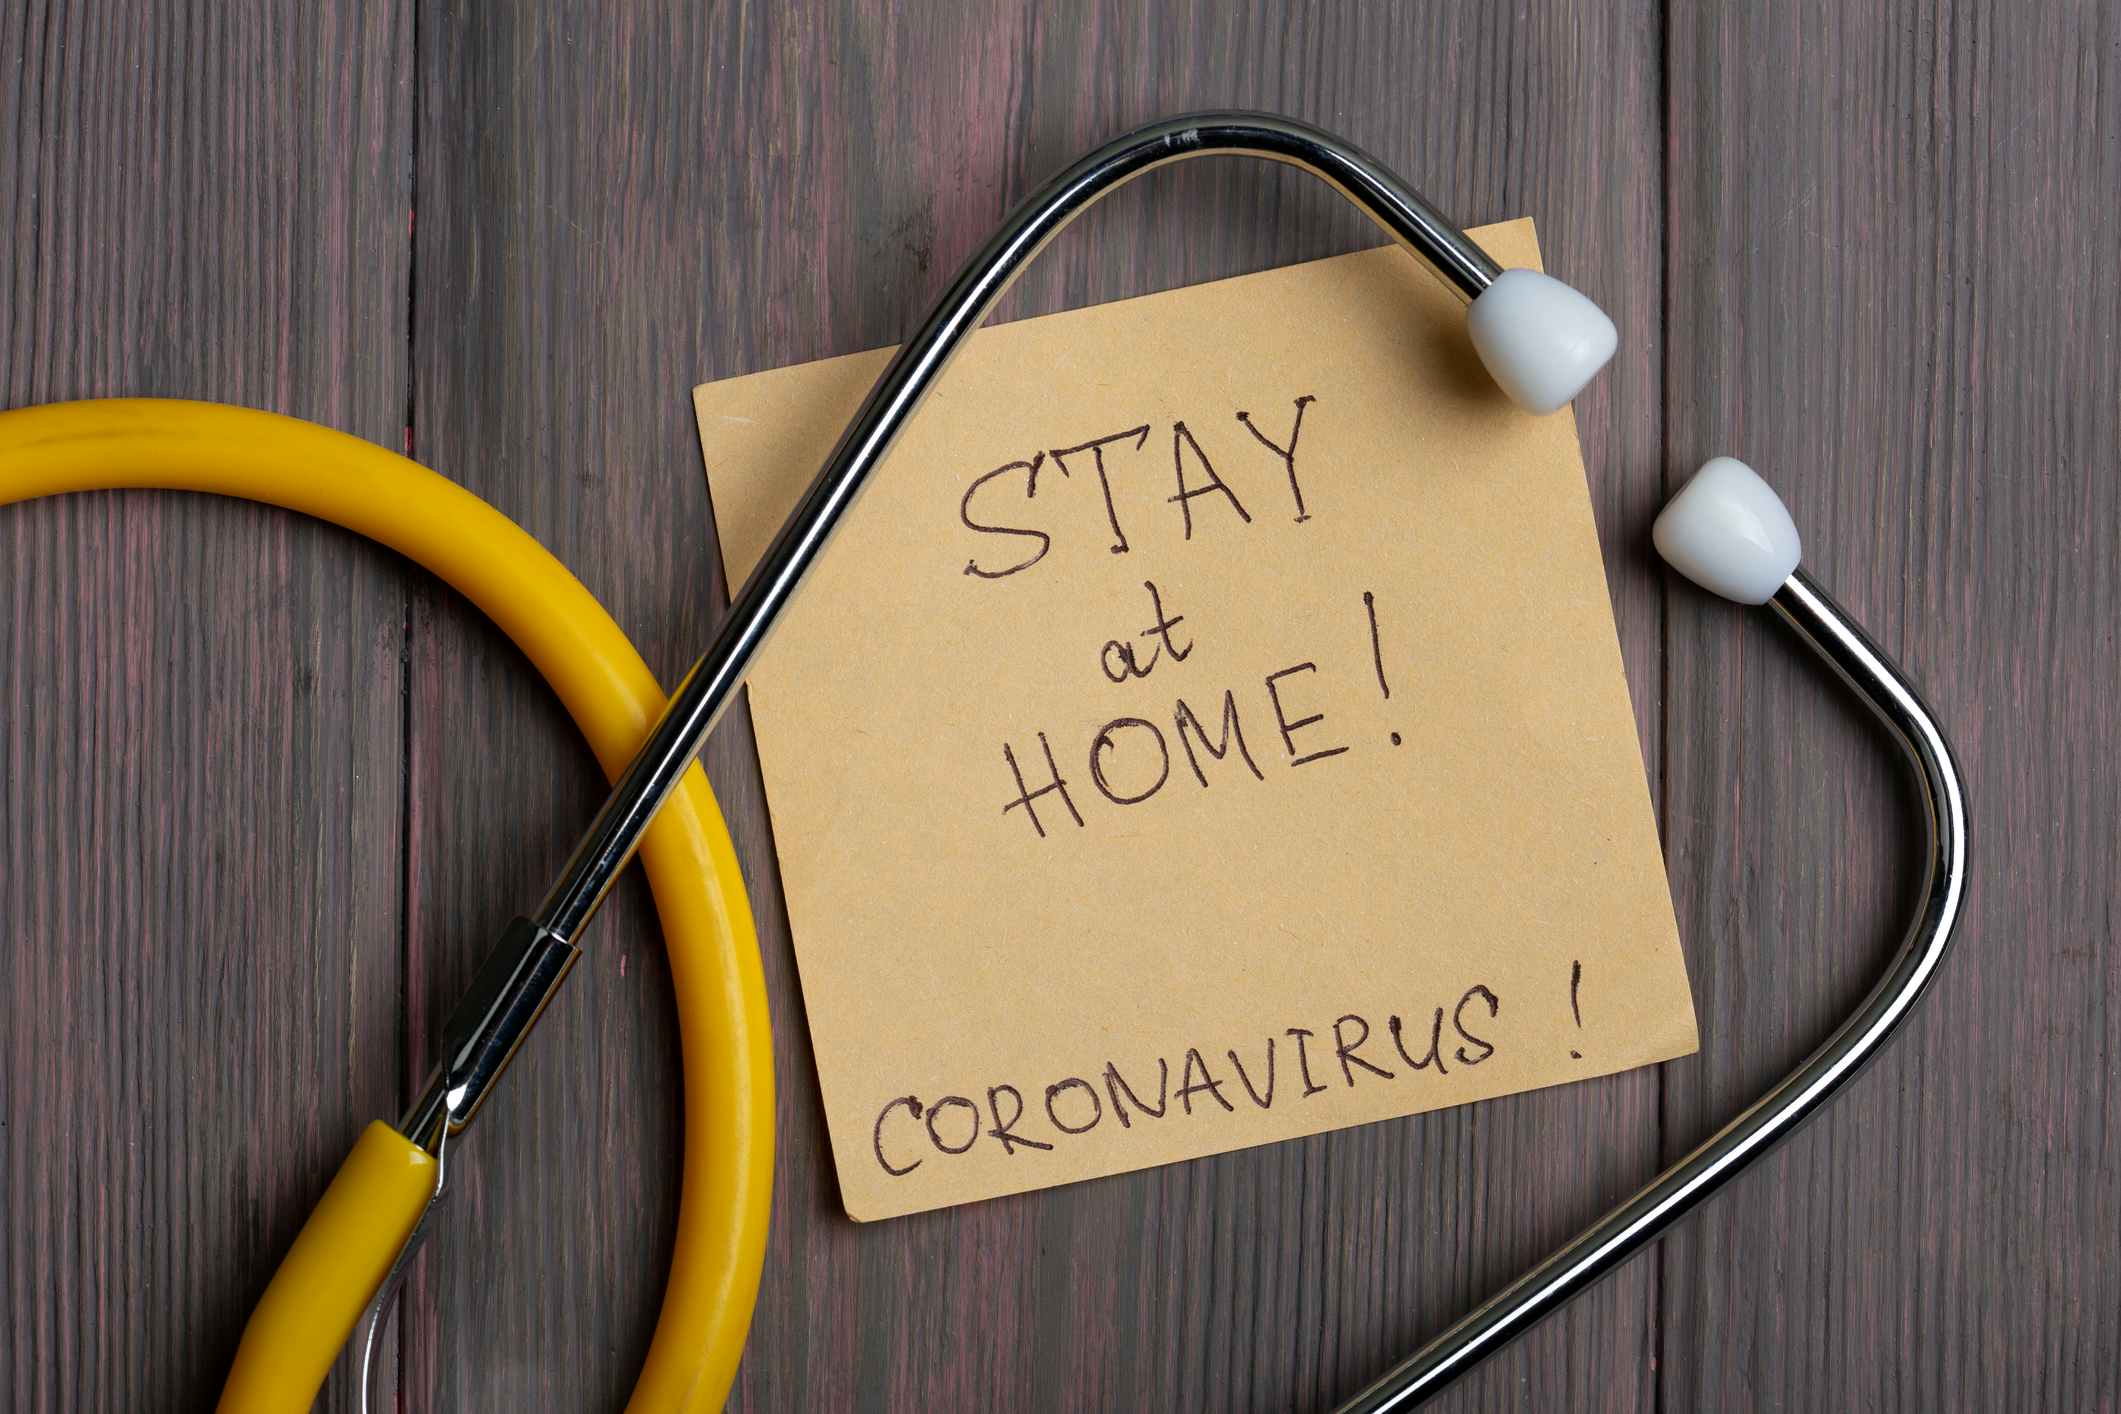 Stay home warning for coronavirus